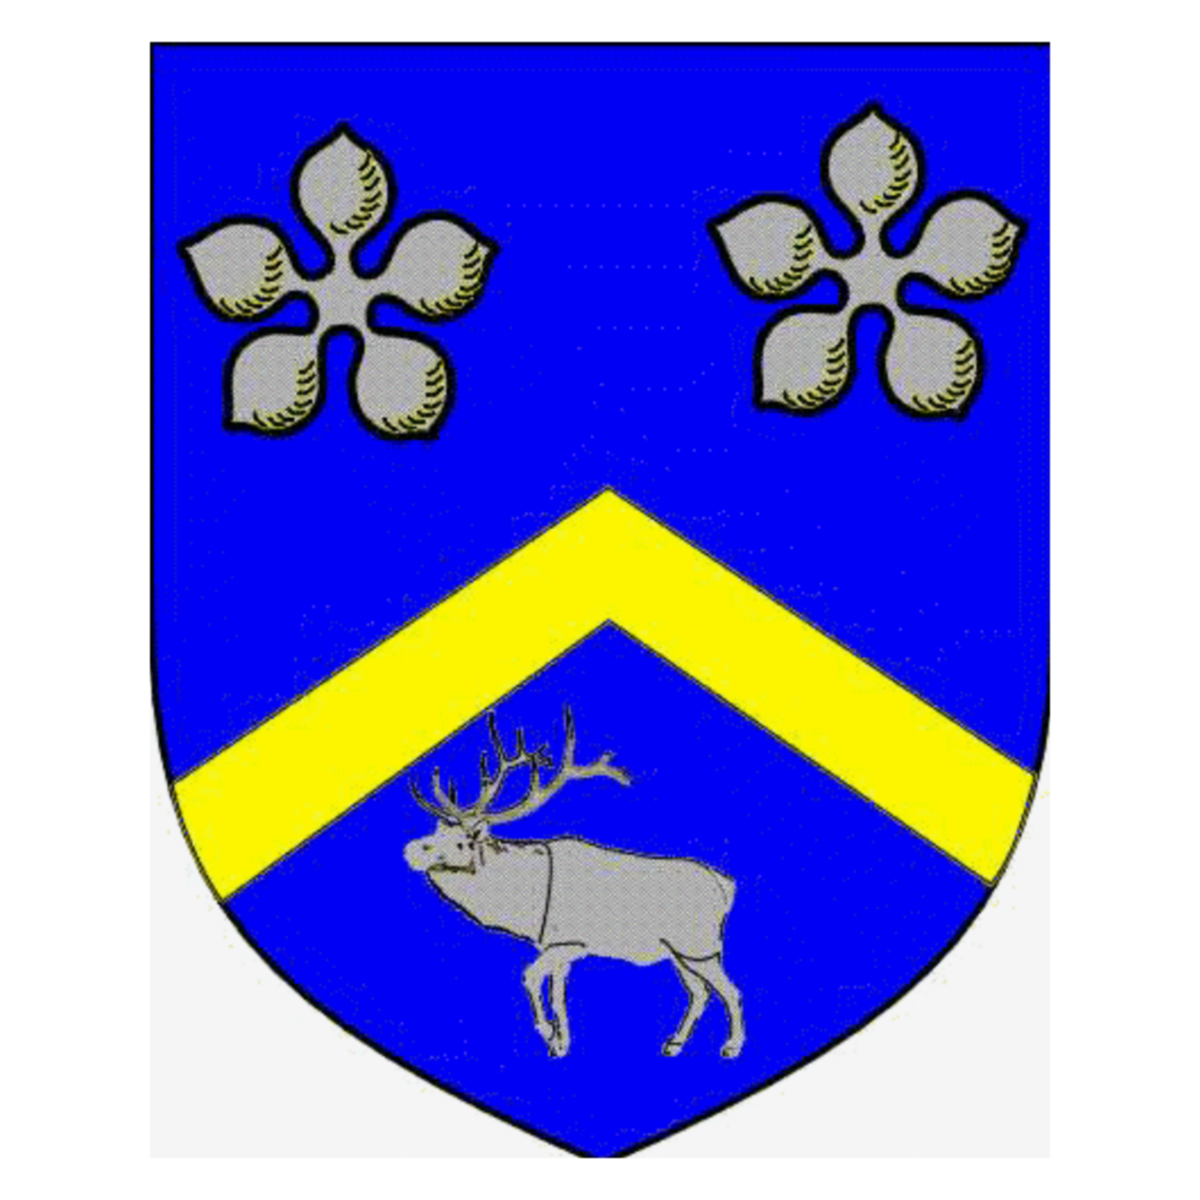 Wappen der Familie Canas